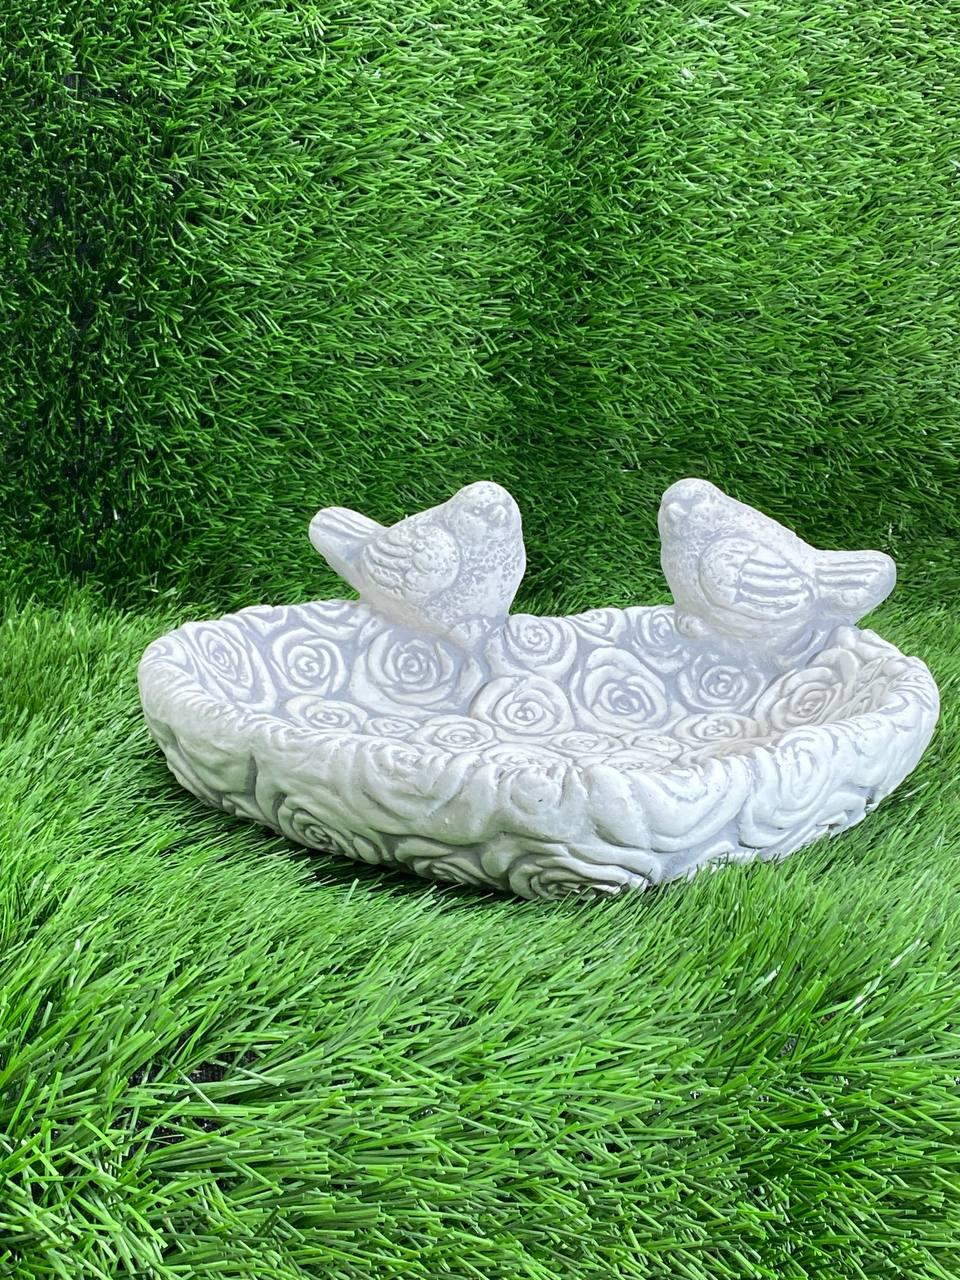 Скульптура бетонне серце з трояндами для саду, фігура серце з птахами та квітами троянд сірого кольору ручного розпису